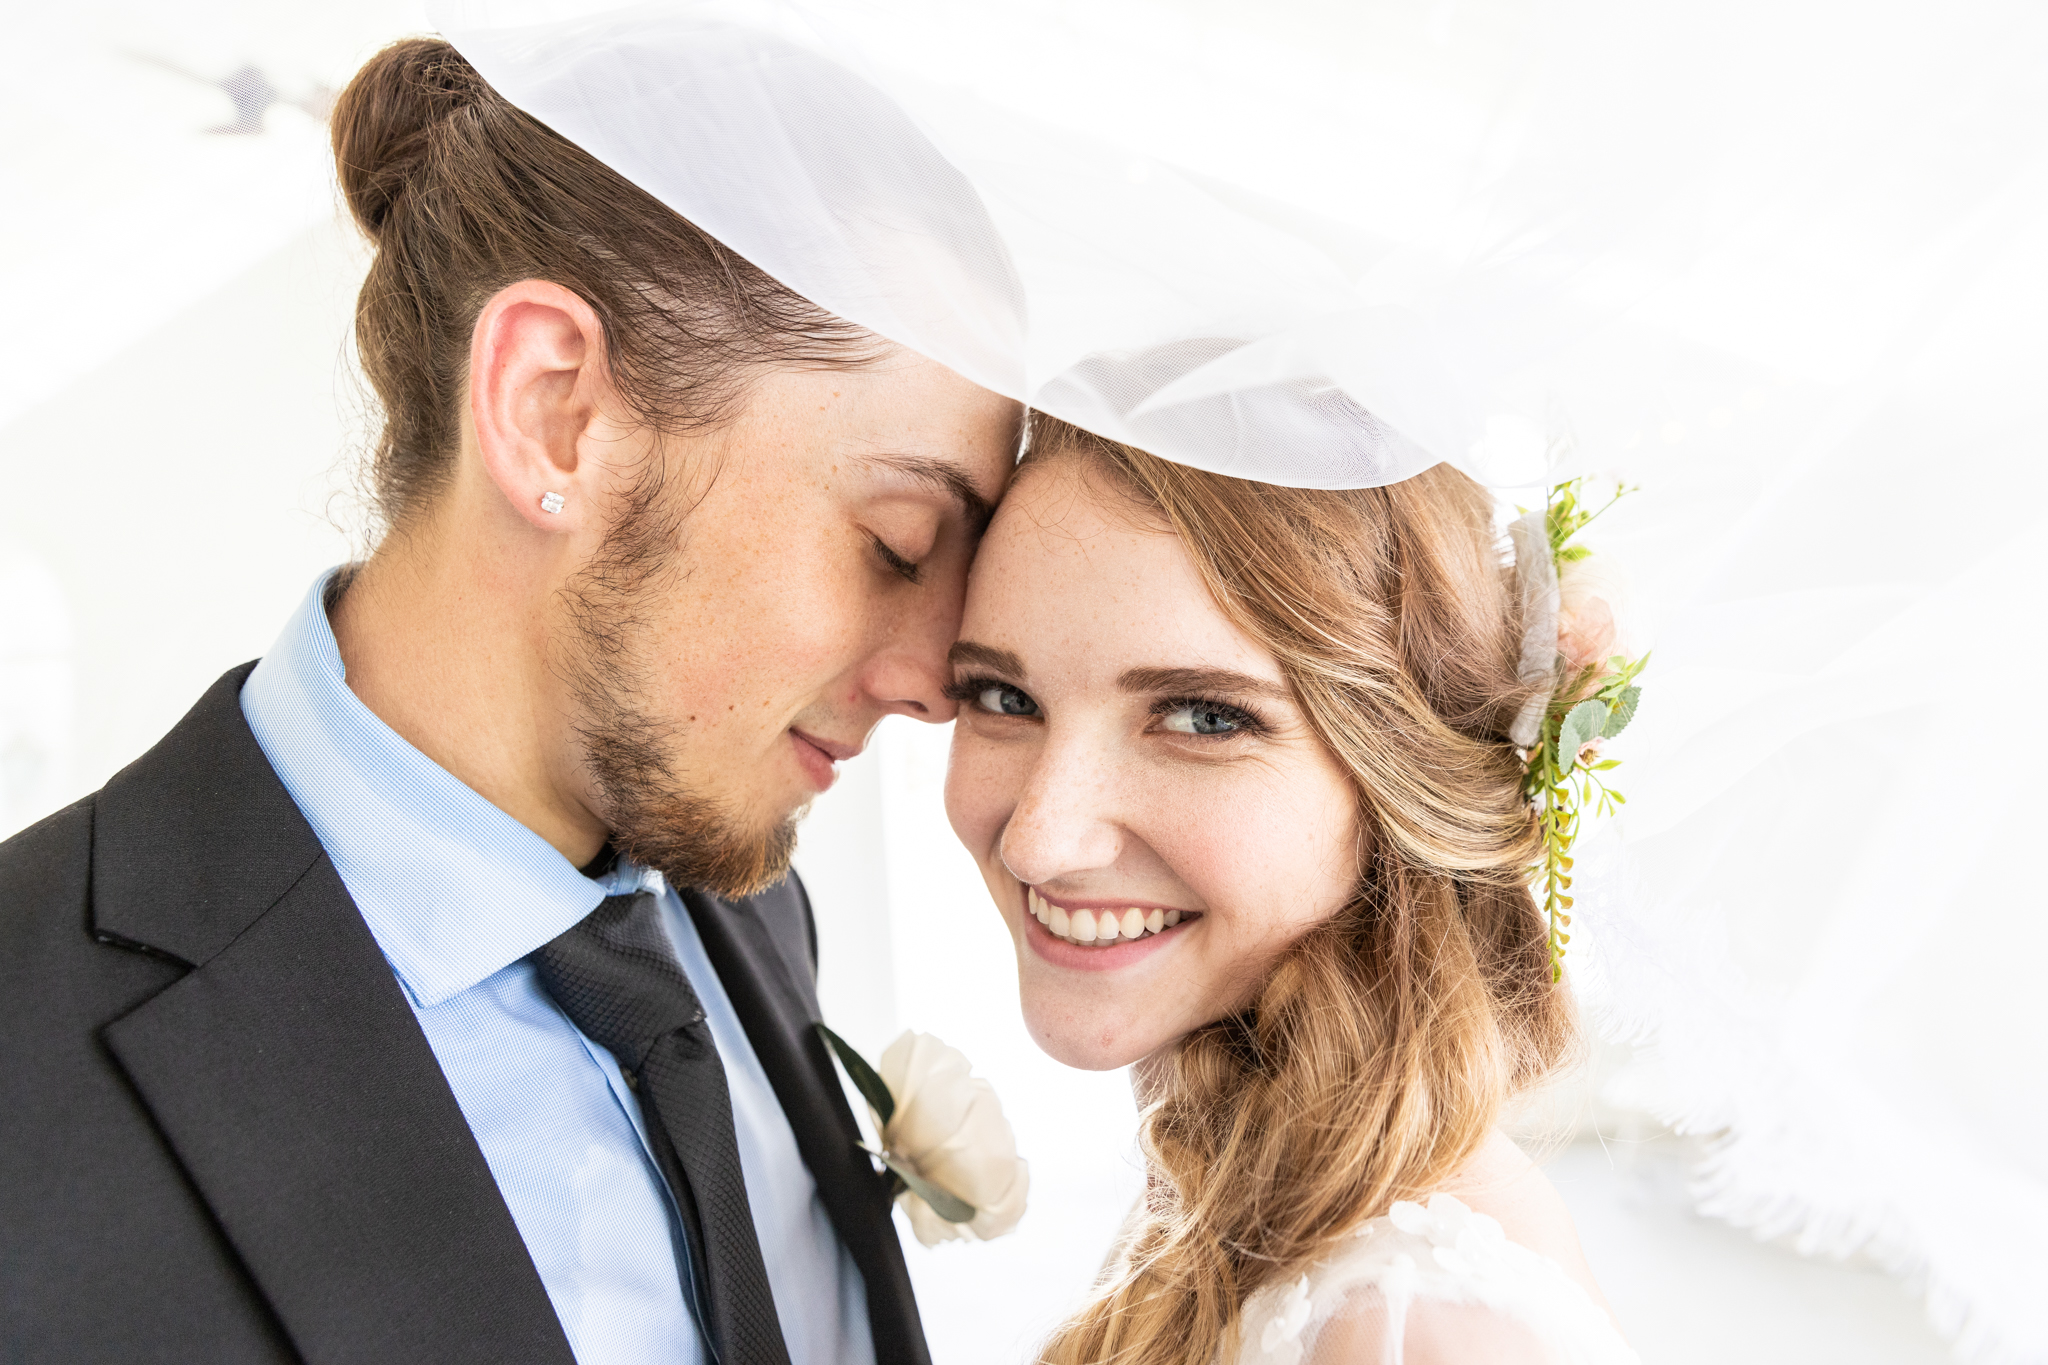 Romantic wedding ceremony photos - best wedding photographers melbourne